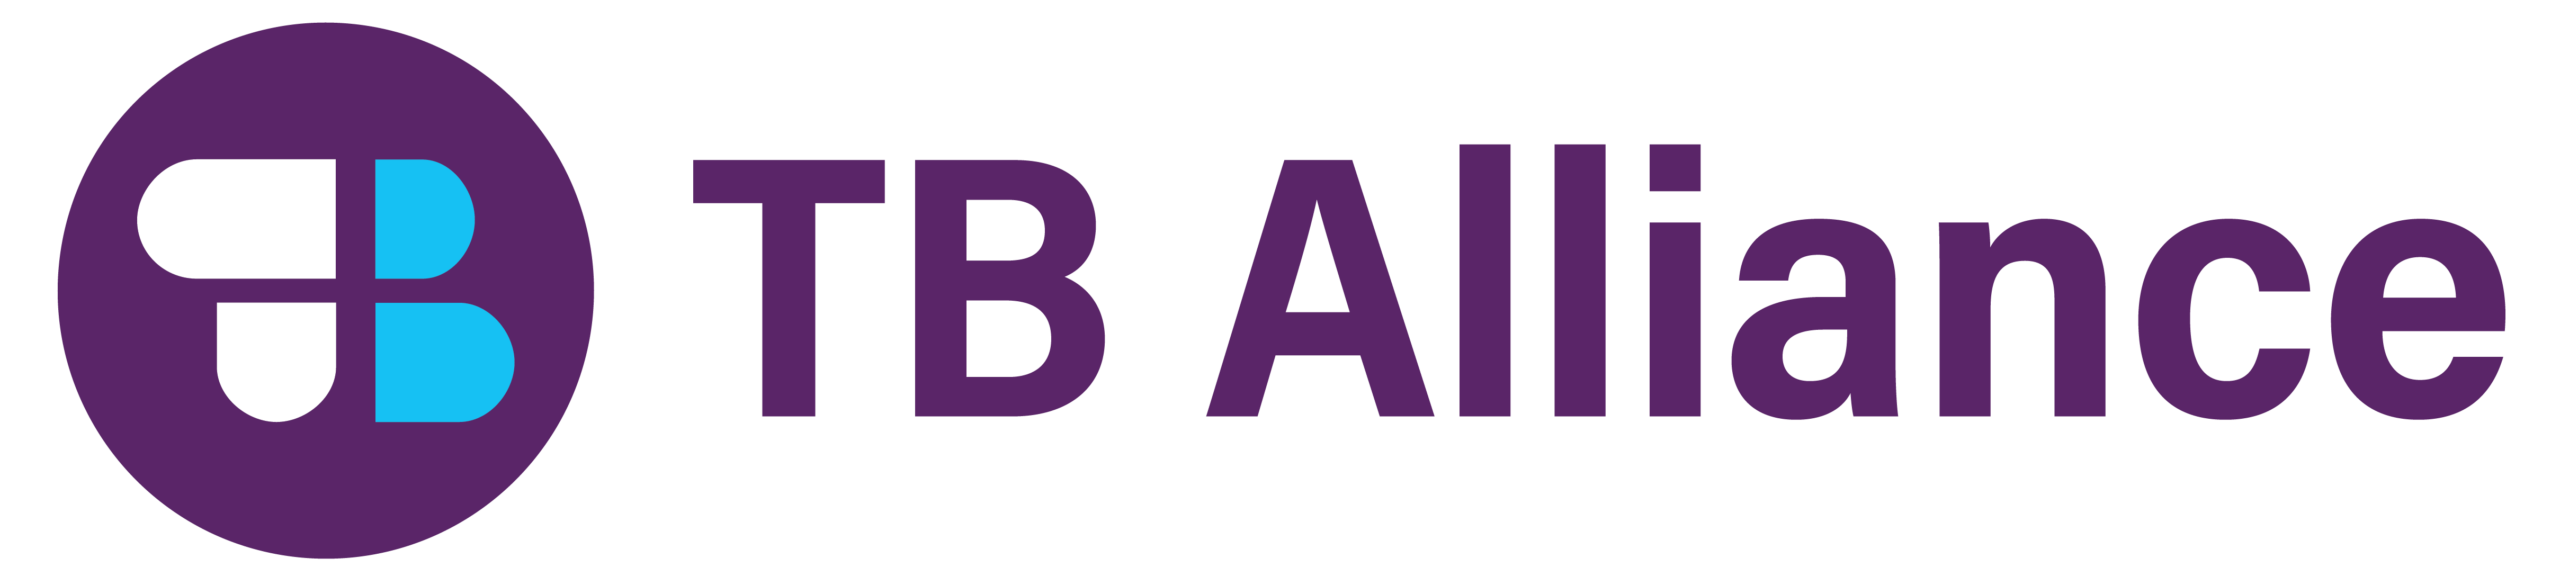 TB Alliance's logo is written in purple text